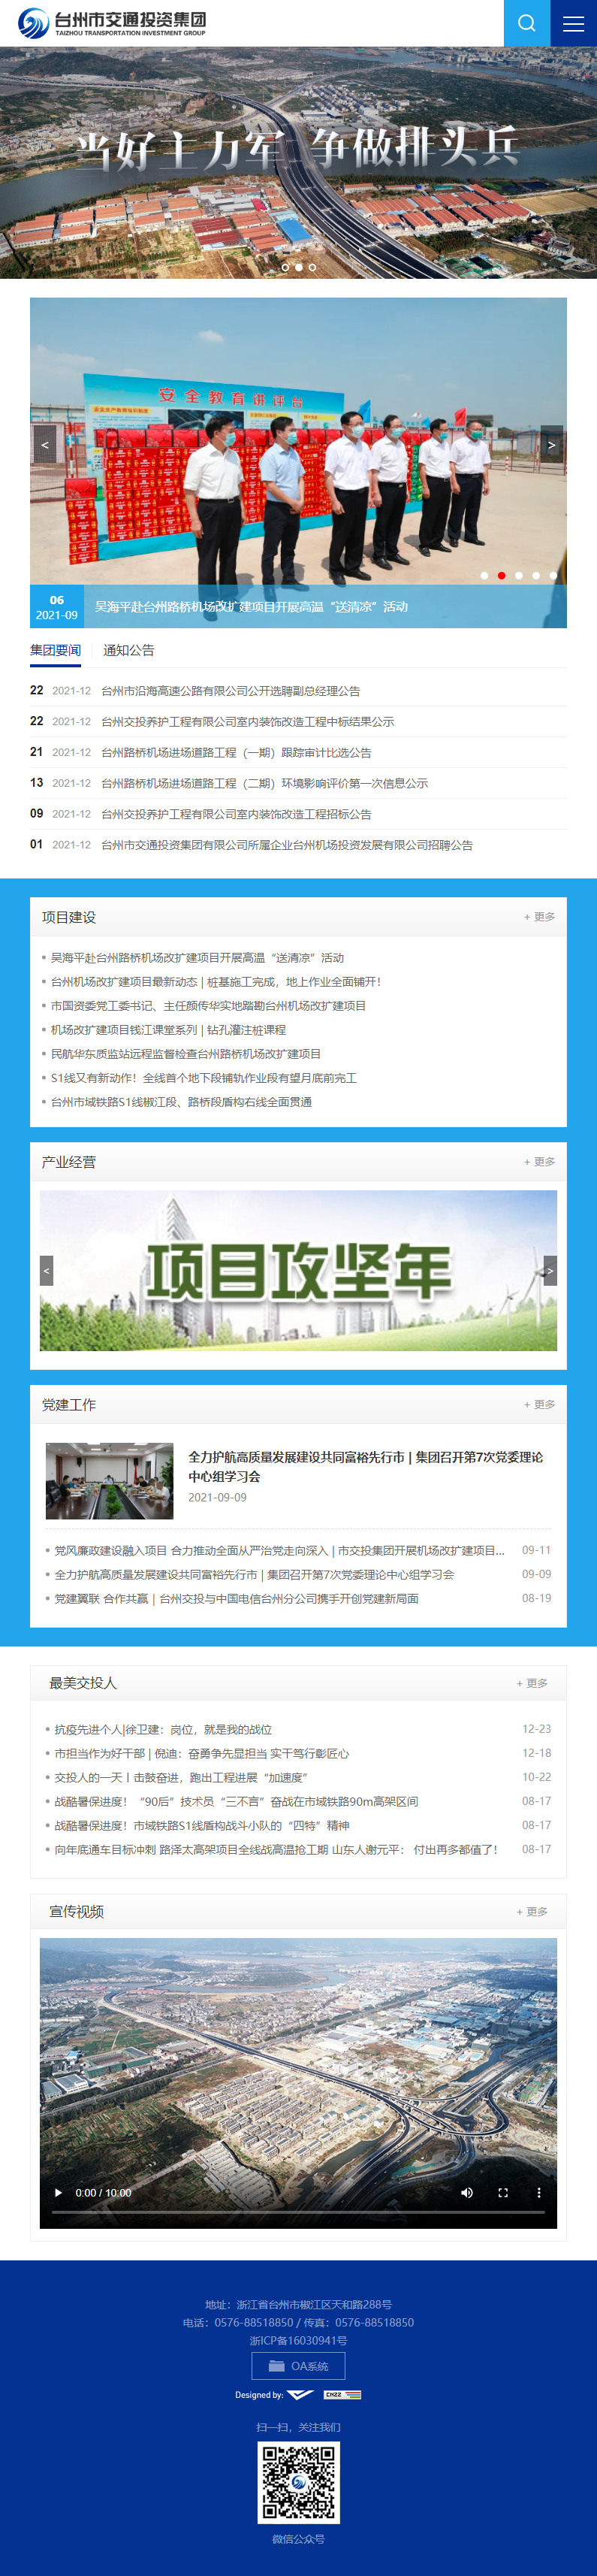 台州市交通投资集团有限公司网站案例